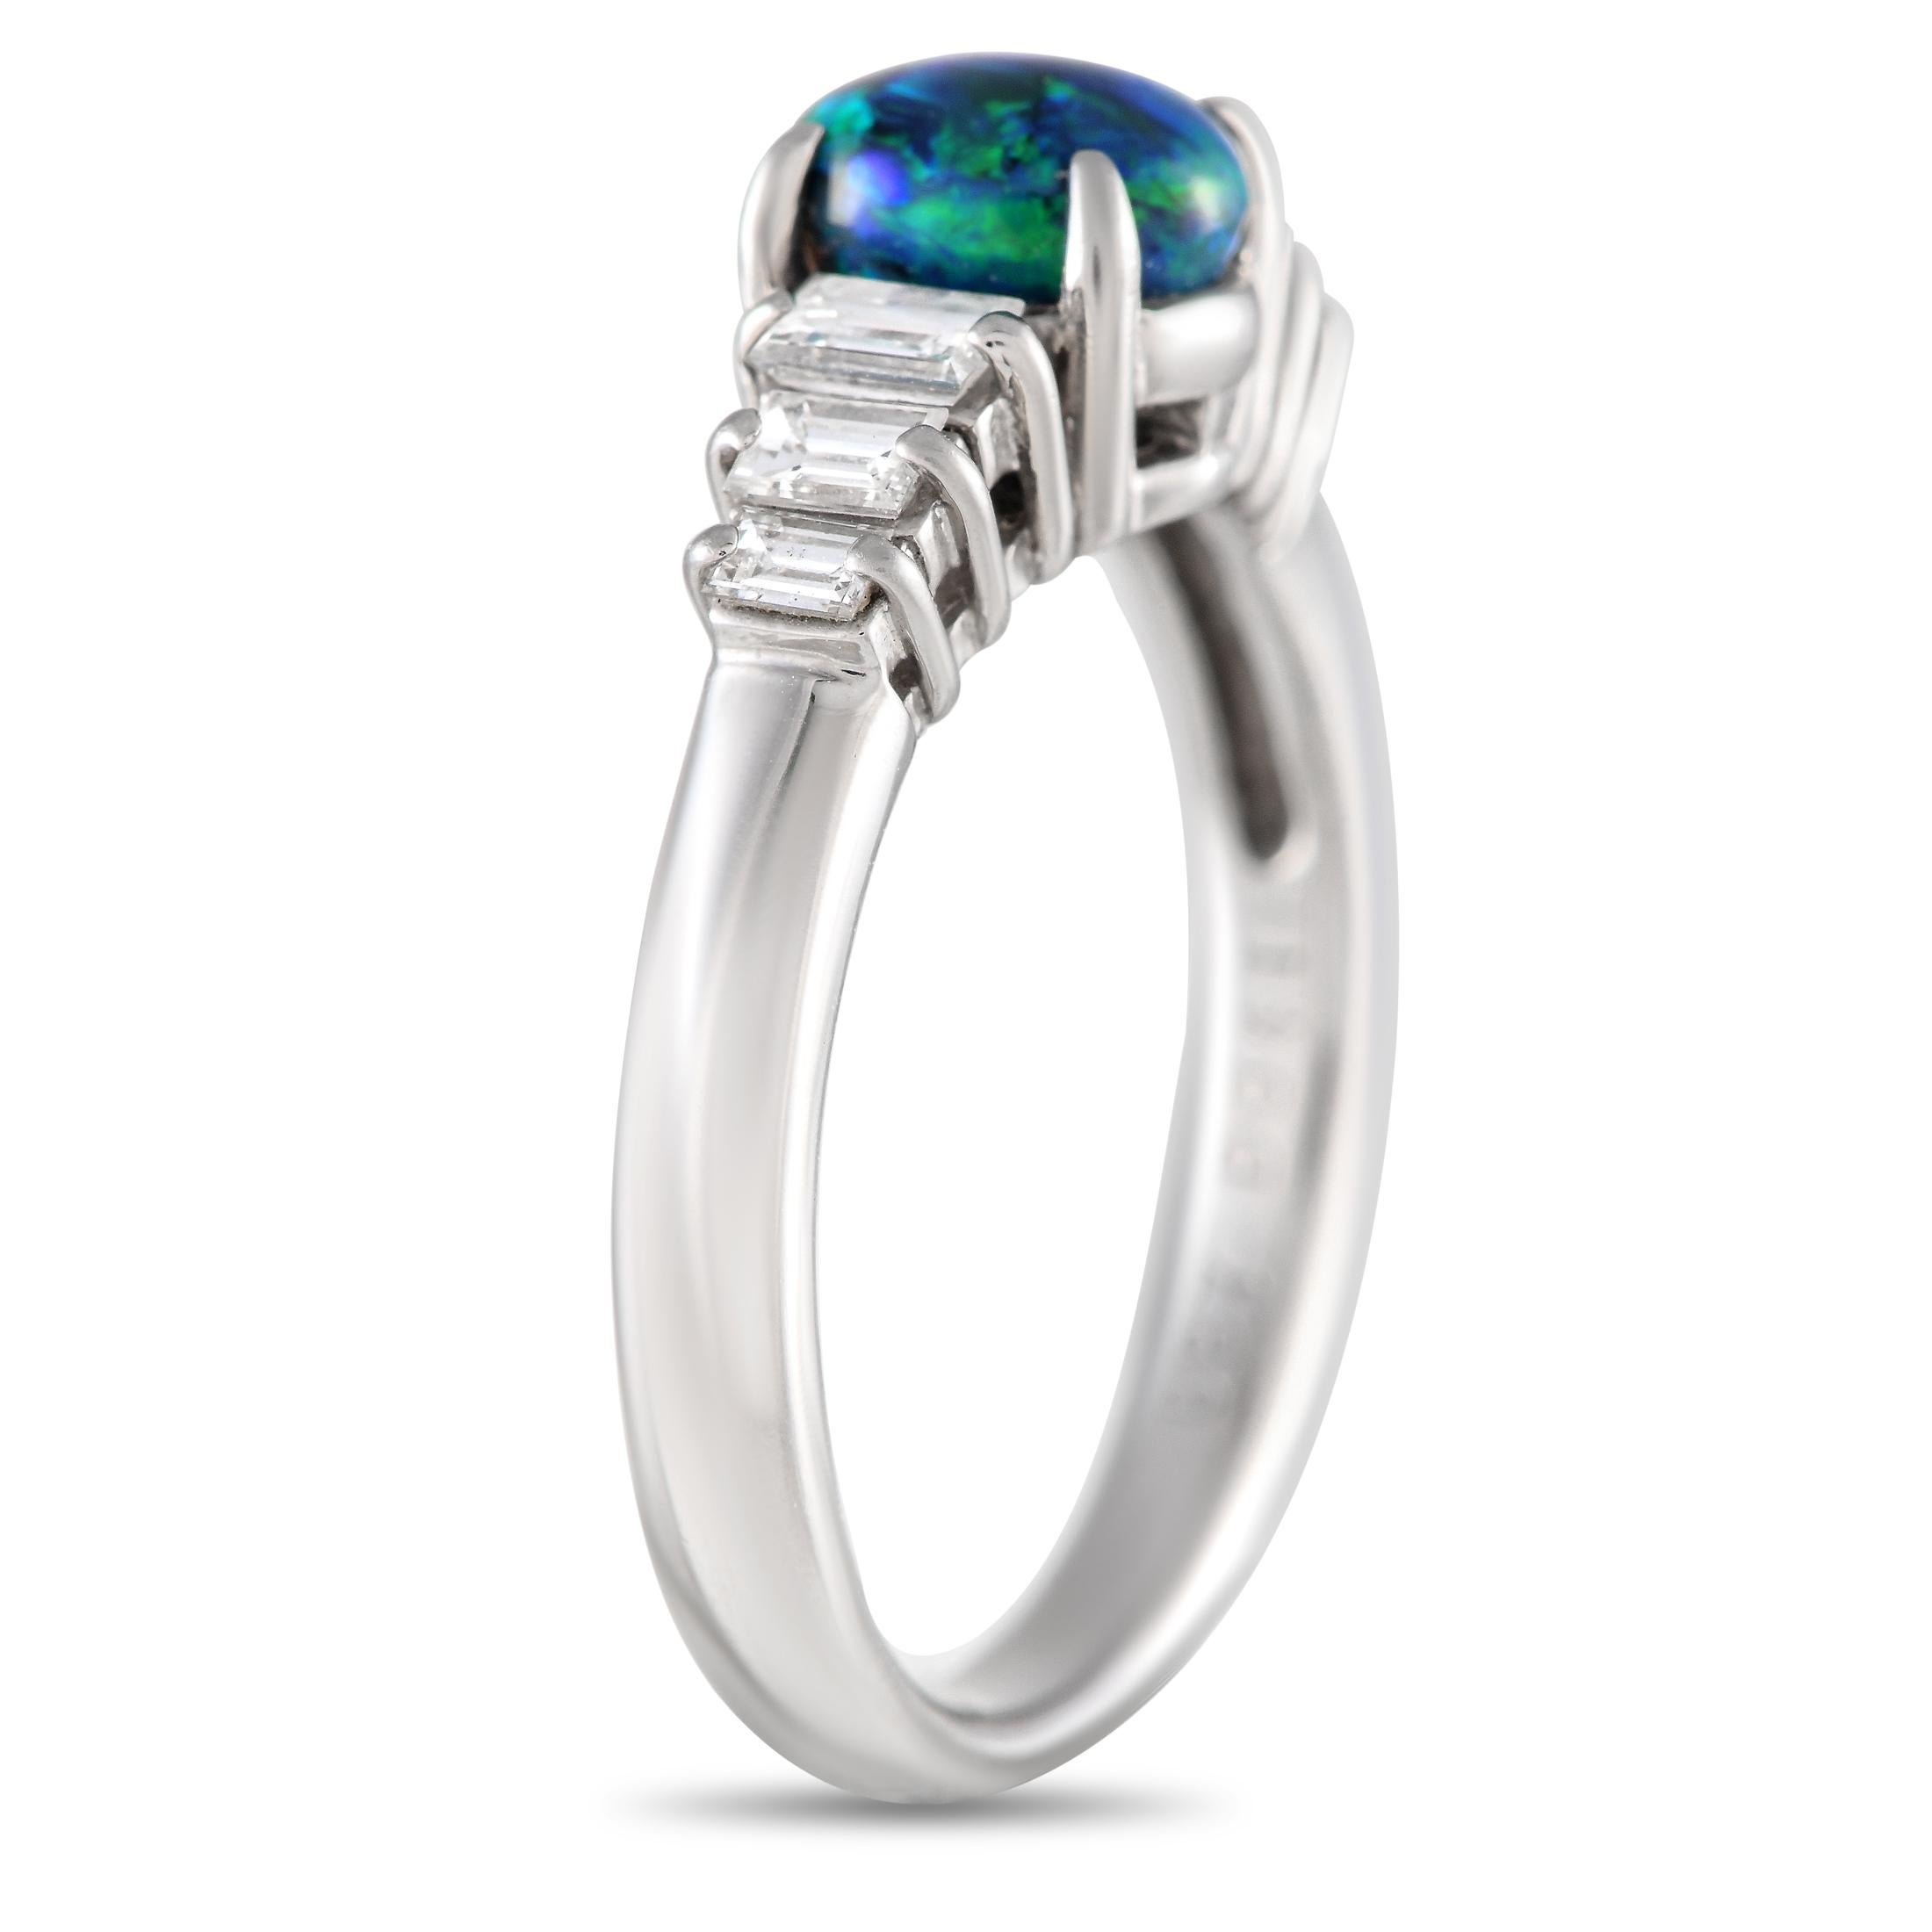 Cette bague simple et élégante captera instantanément votre imagination. La pierre centrale en opale de 0,87 carat constitue un point focal étonnant grâce à sa combinaison époustouflante de tons bleus et verts. Des diamants d'un poids total de 0,41